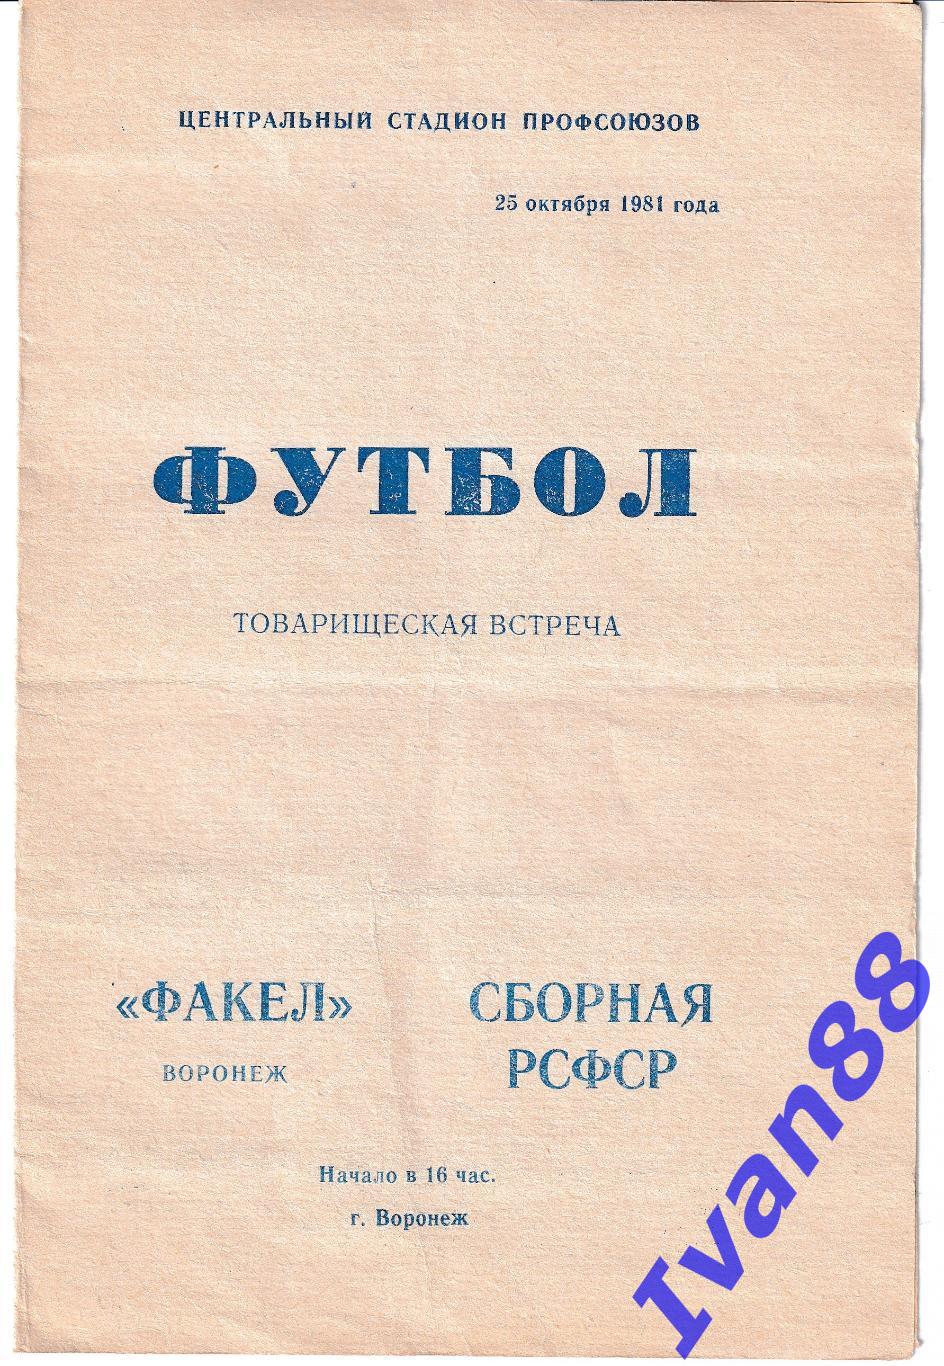 Факел Воронеж - Сборная РСФСР 1981